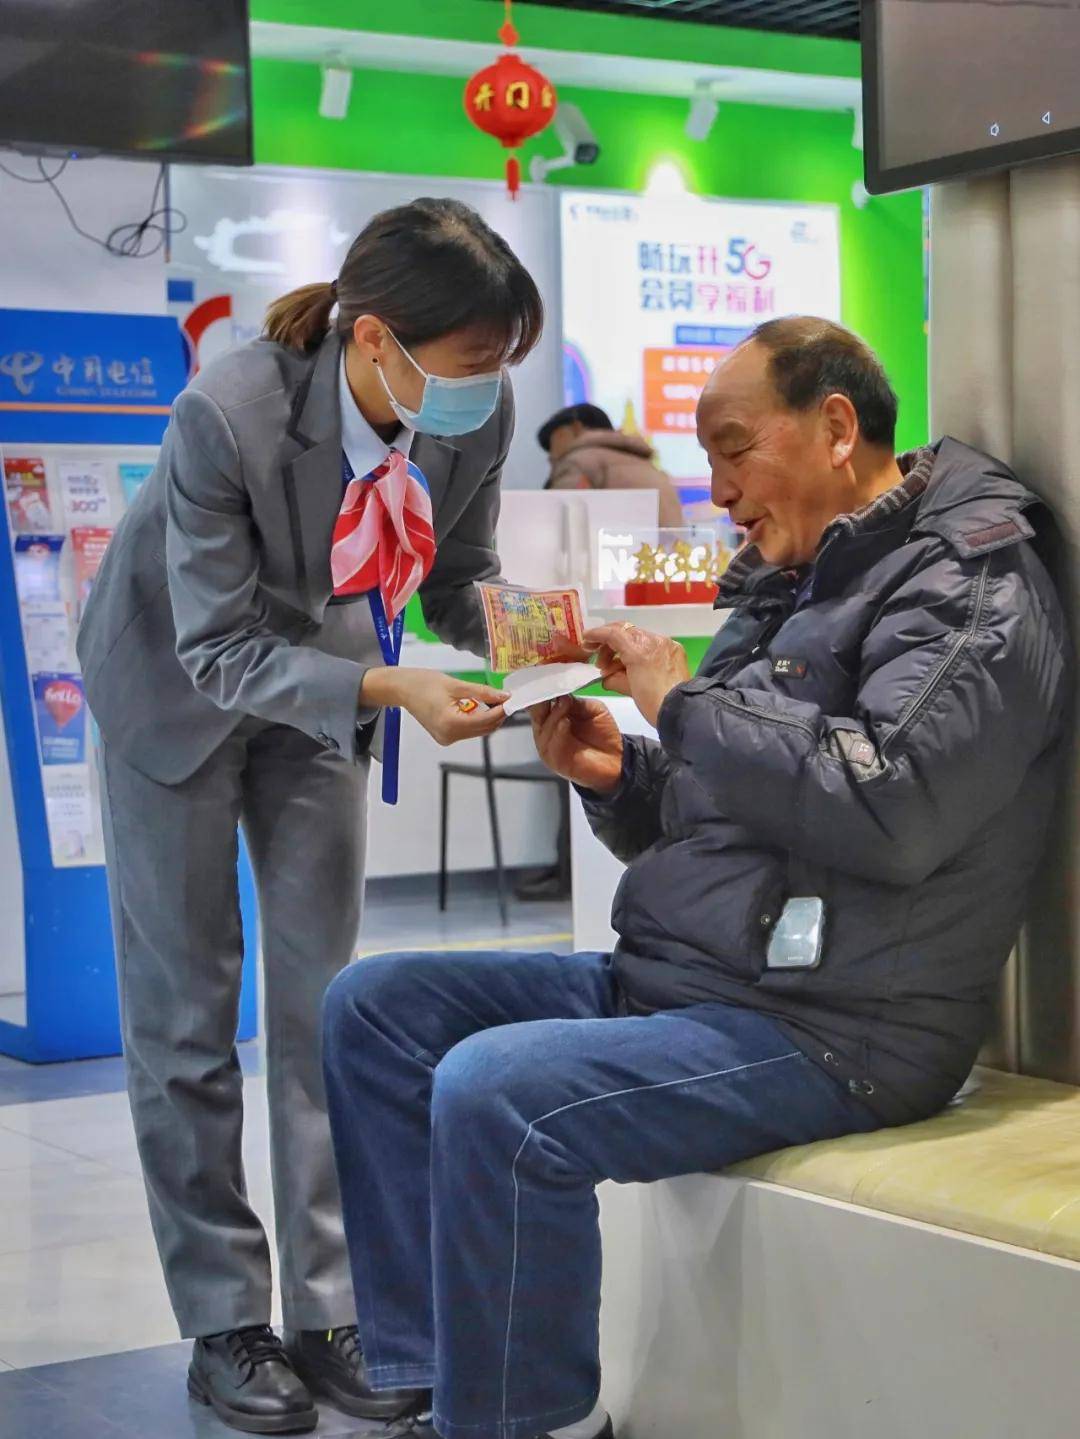 2019年7月,上海电信为75岁及以上的老年用户提供快速接通人工客服服务